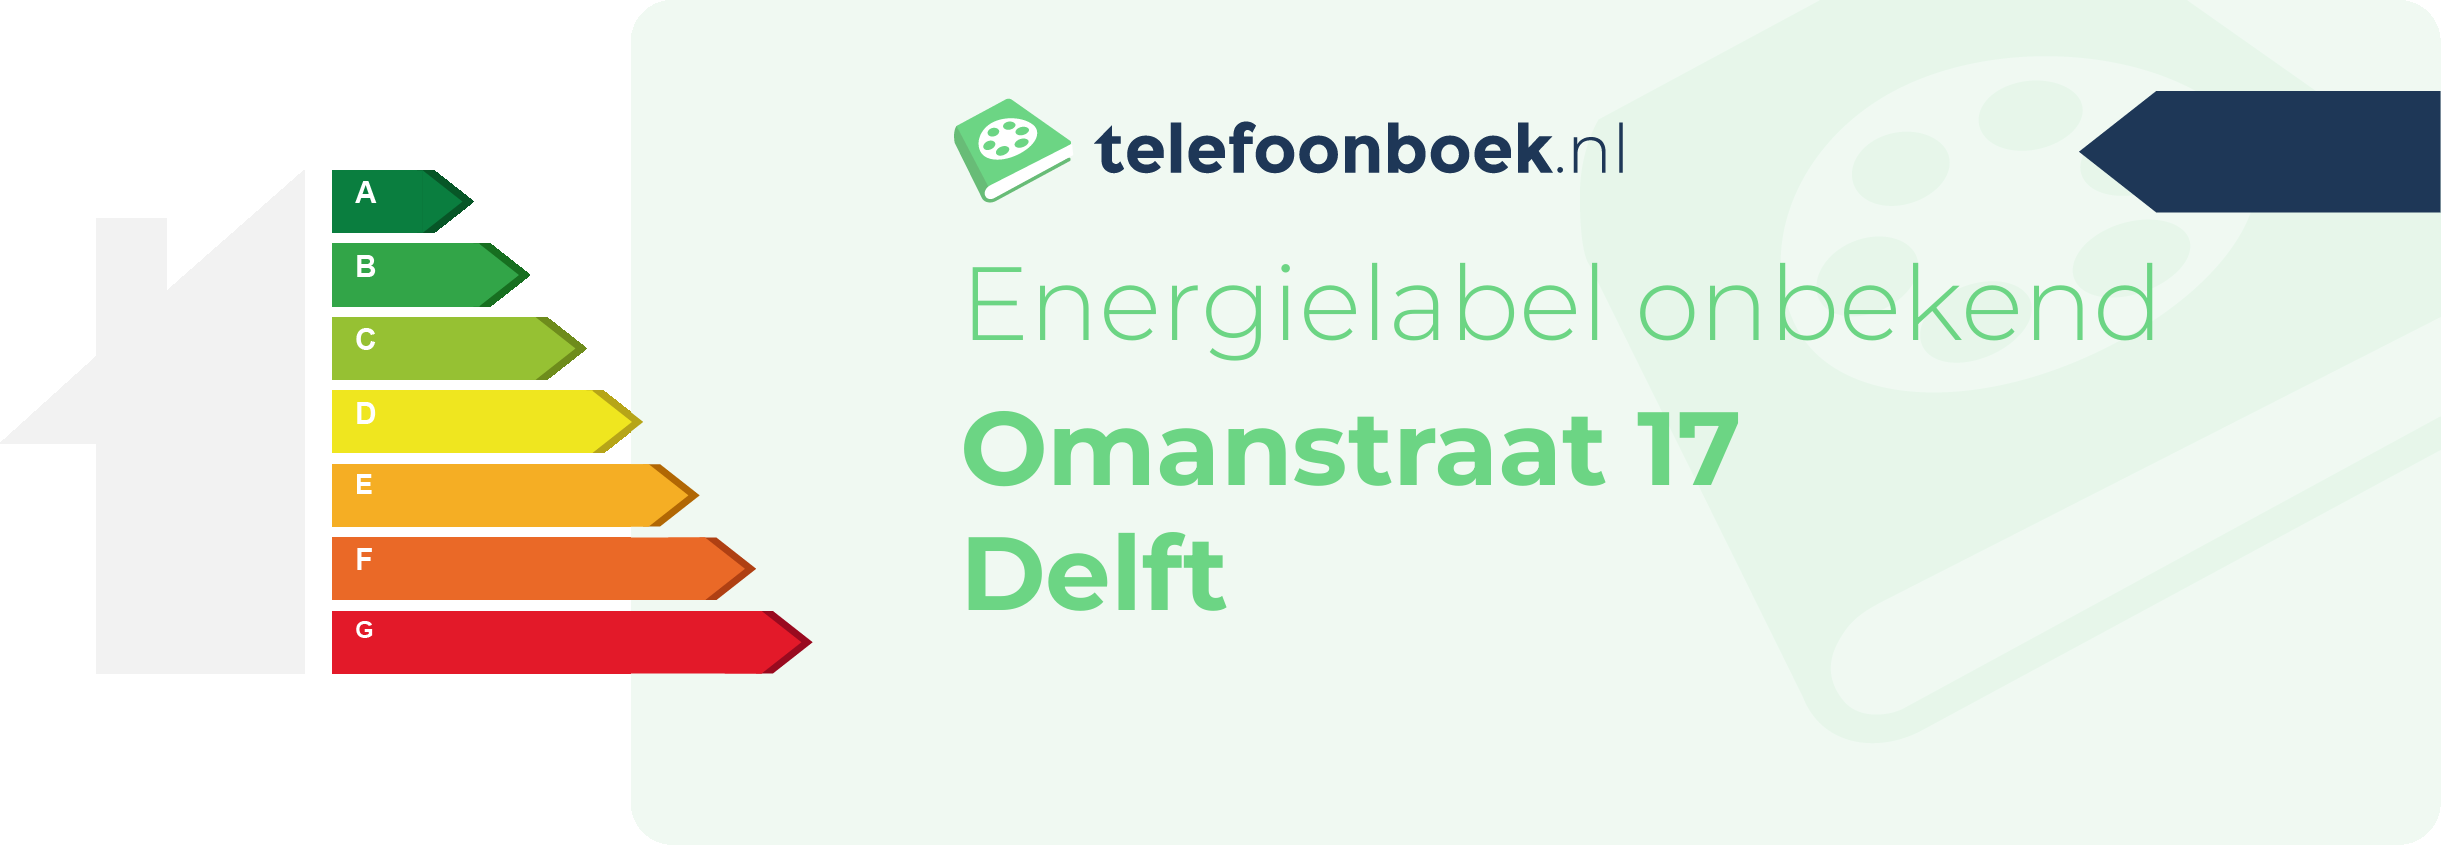 Energielabel Omanstraat 17 Delft